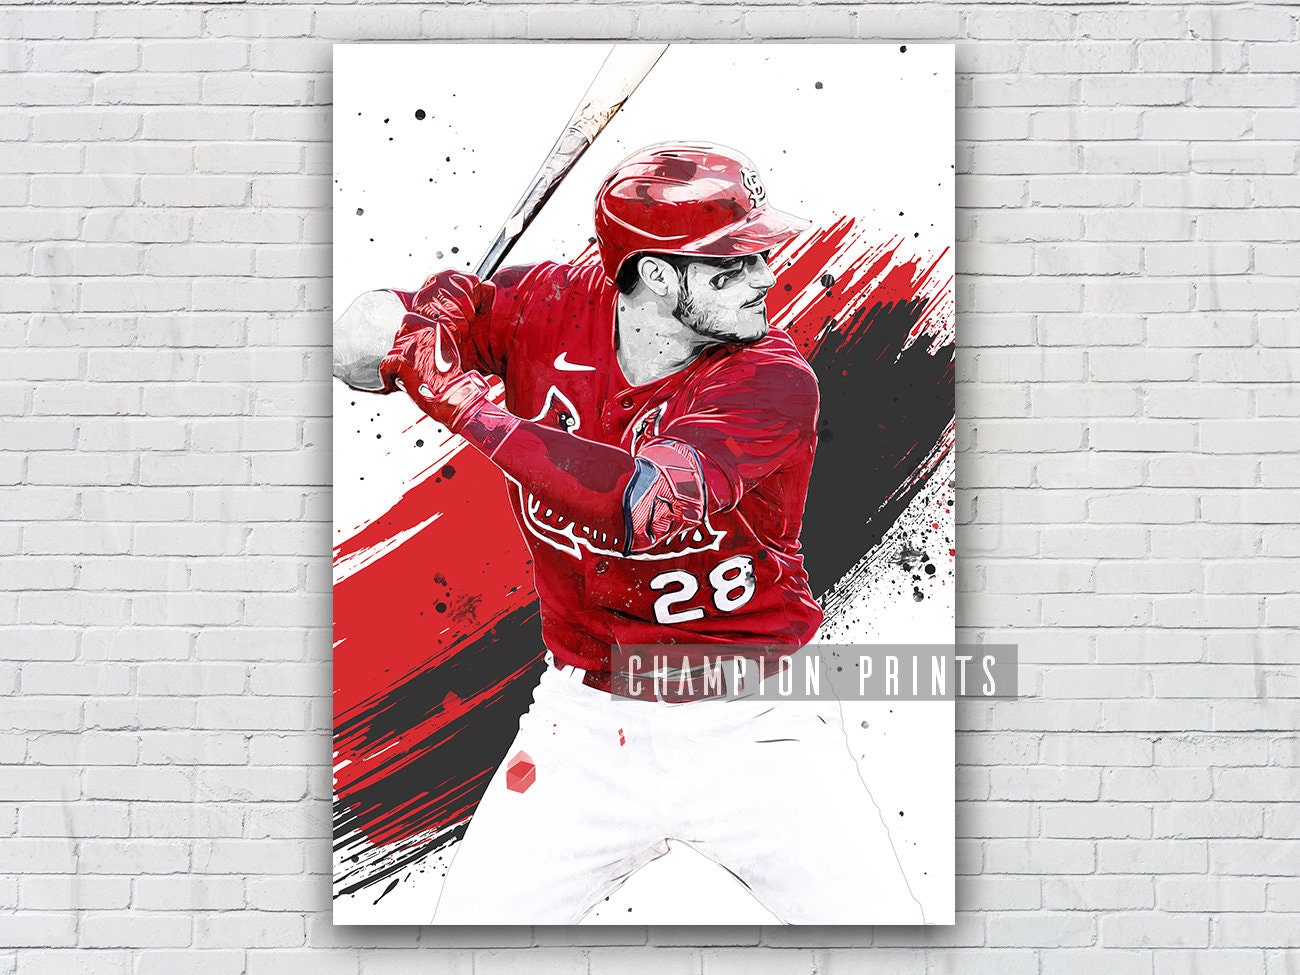 MLB St. Louis Cardinals - Nolan Arenado 22 Wall Poster, 14.725 x 22.375